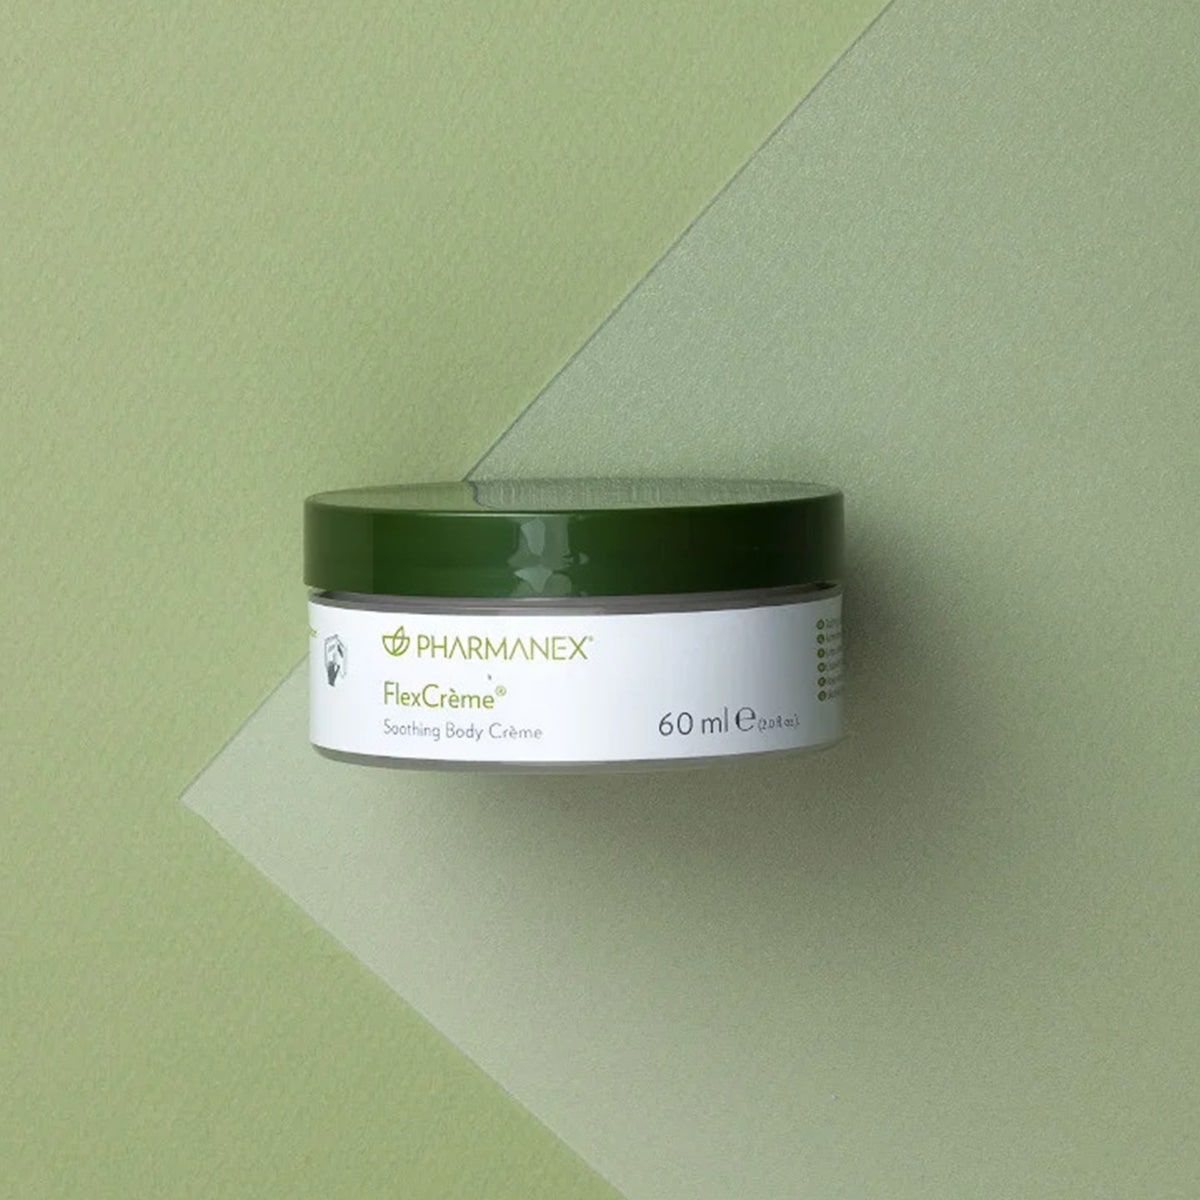 Pharmanex Flex Creme von NuSkin liegt geschlossen auf olivfarbener Oberfläche.